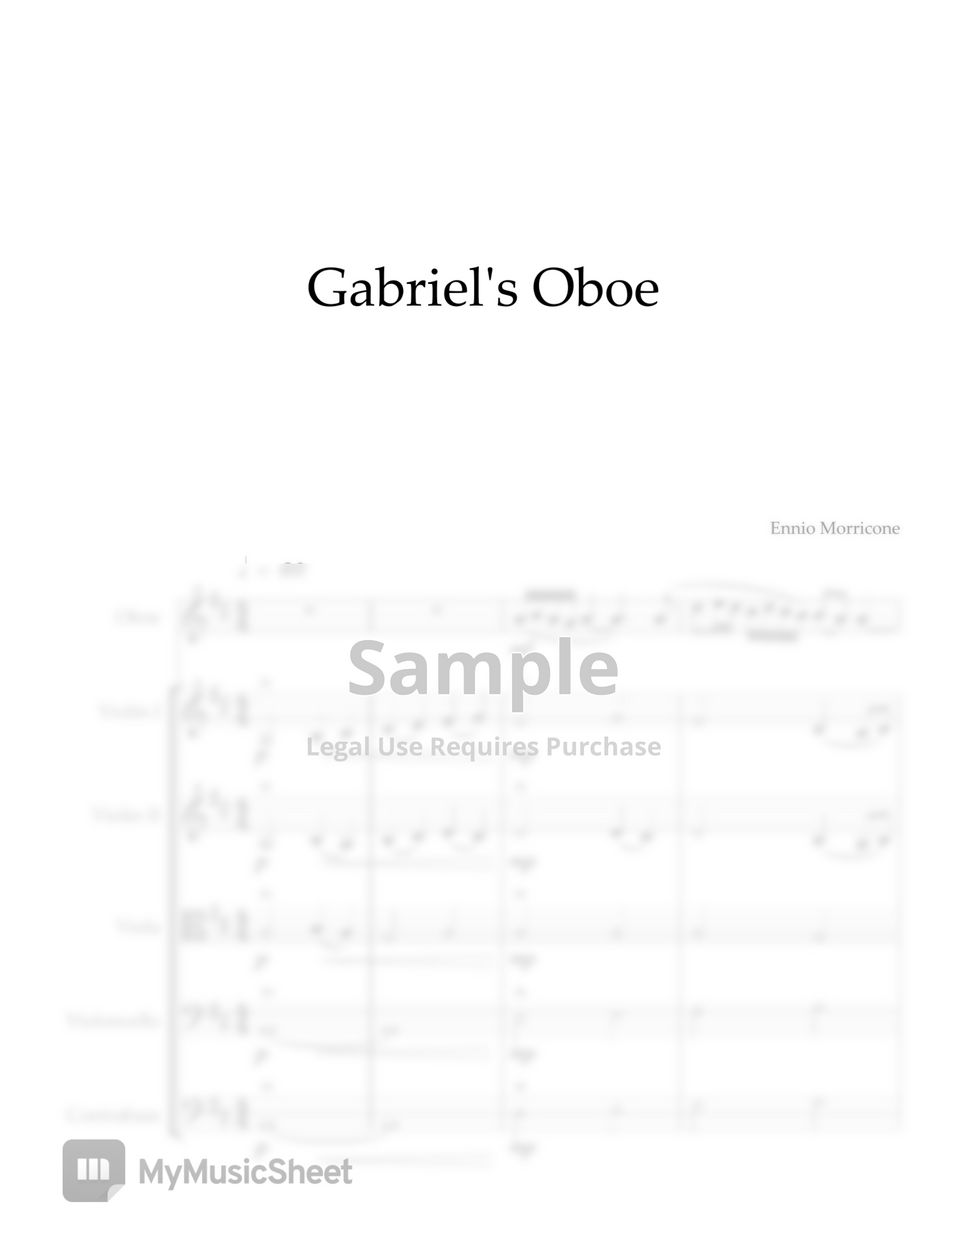 Ennio Morricone - Gabriel's Oboe by Hai Mai